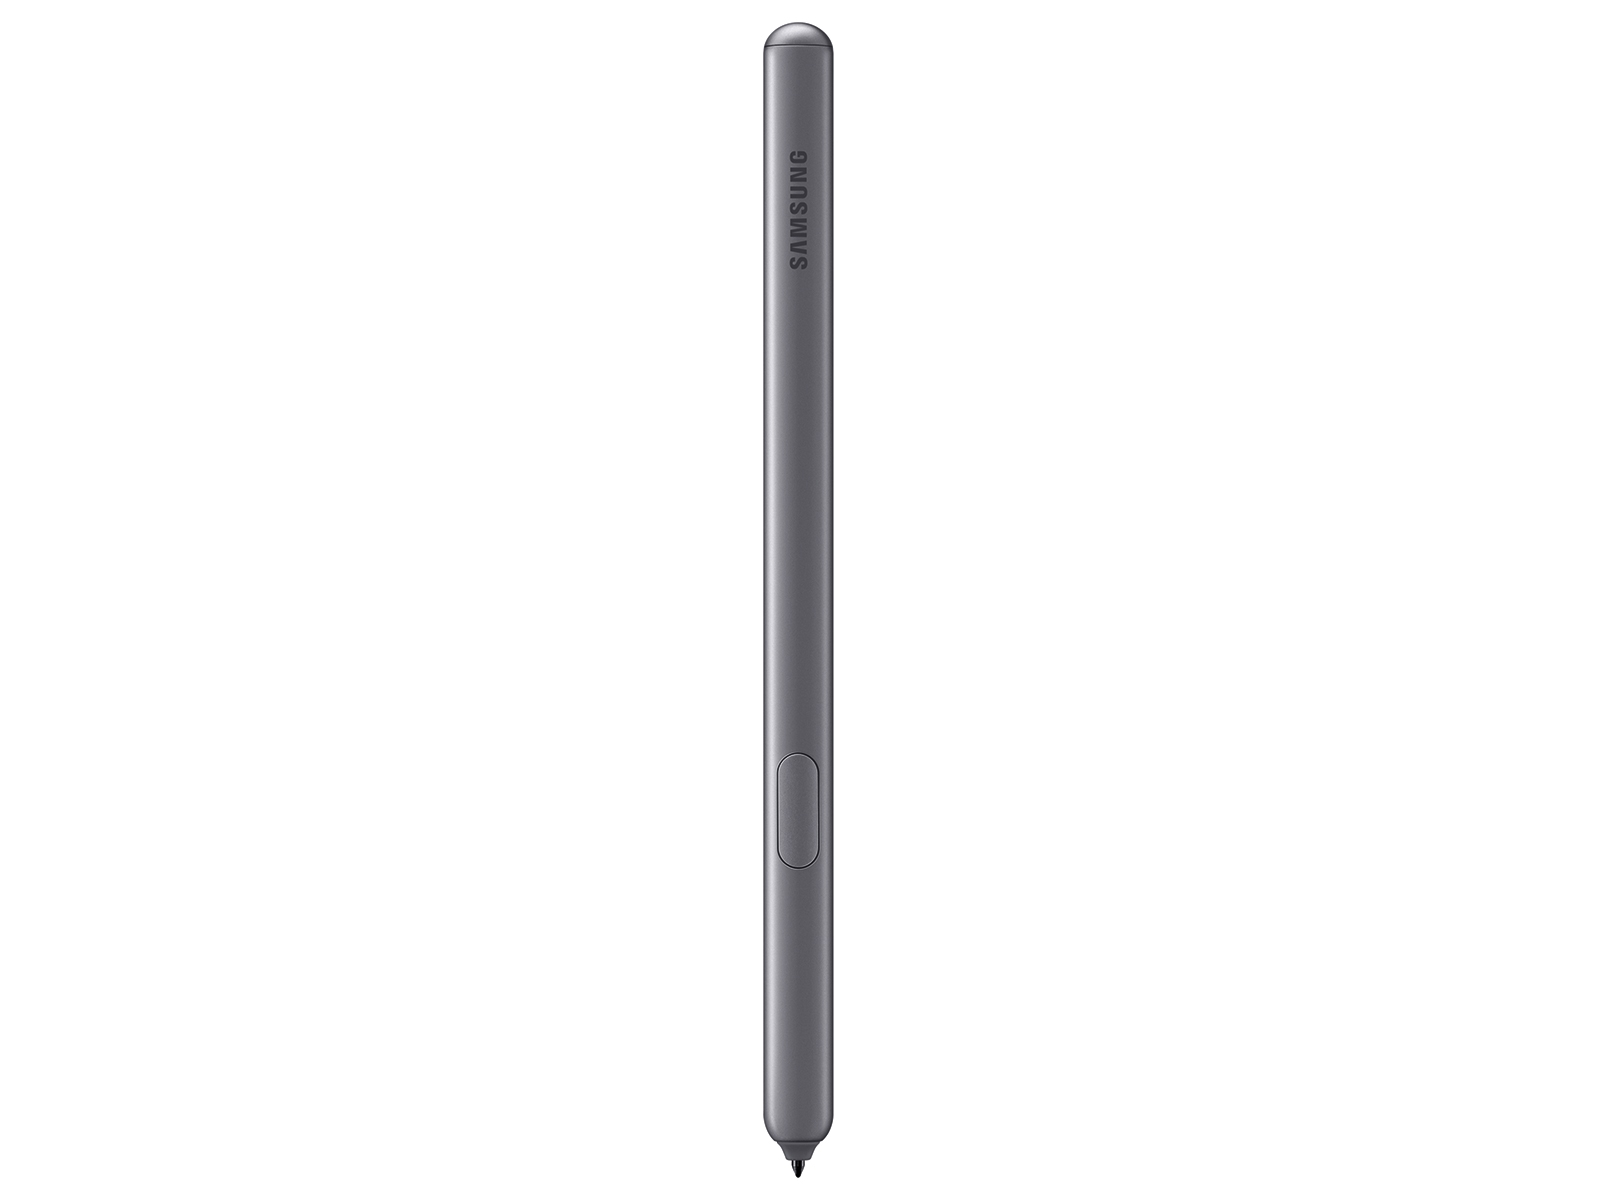 S pen купить. Samsung Galaxy Tab s6 стилус. Samsung Galaxy Tab s6 Lite стилус. Samsung Galaxy Tab s6 Pen. Samsung Galaxy Tab s6 10.5 SM-t860 128gb (2019).